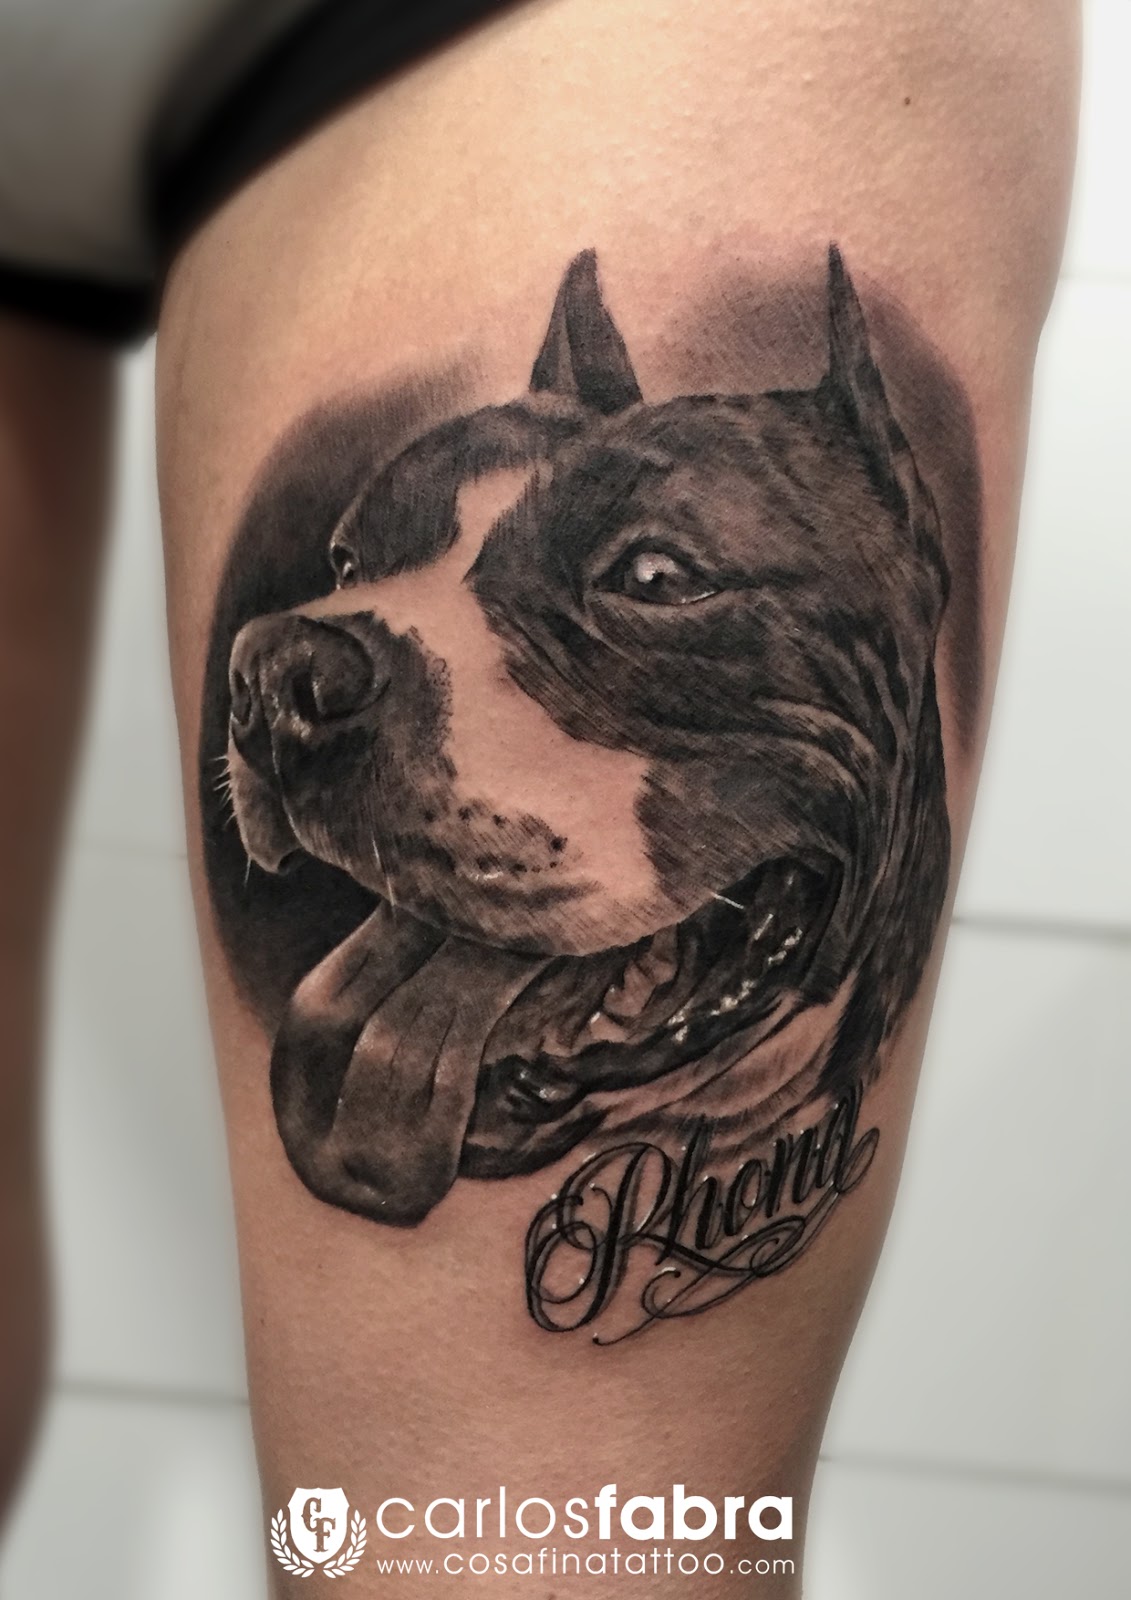 Tatuaje Tatuajes Tattoo Tattoos Barcelona Perro Dog American Bully